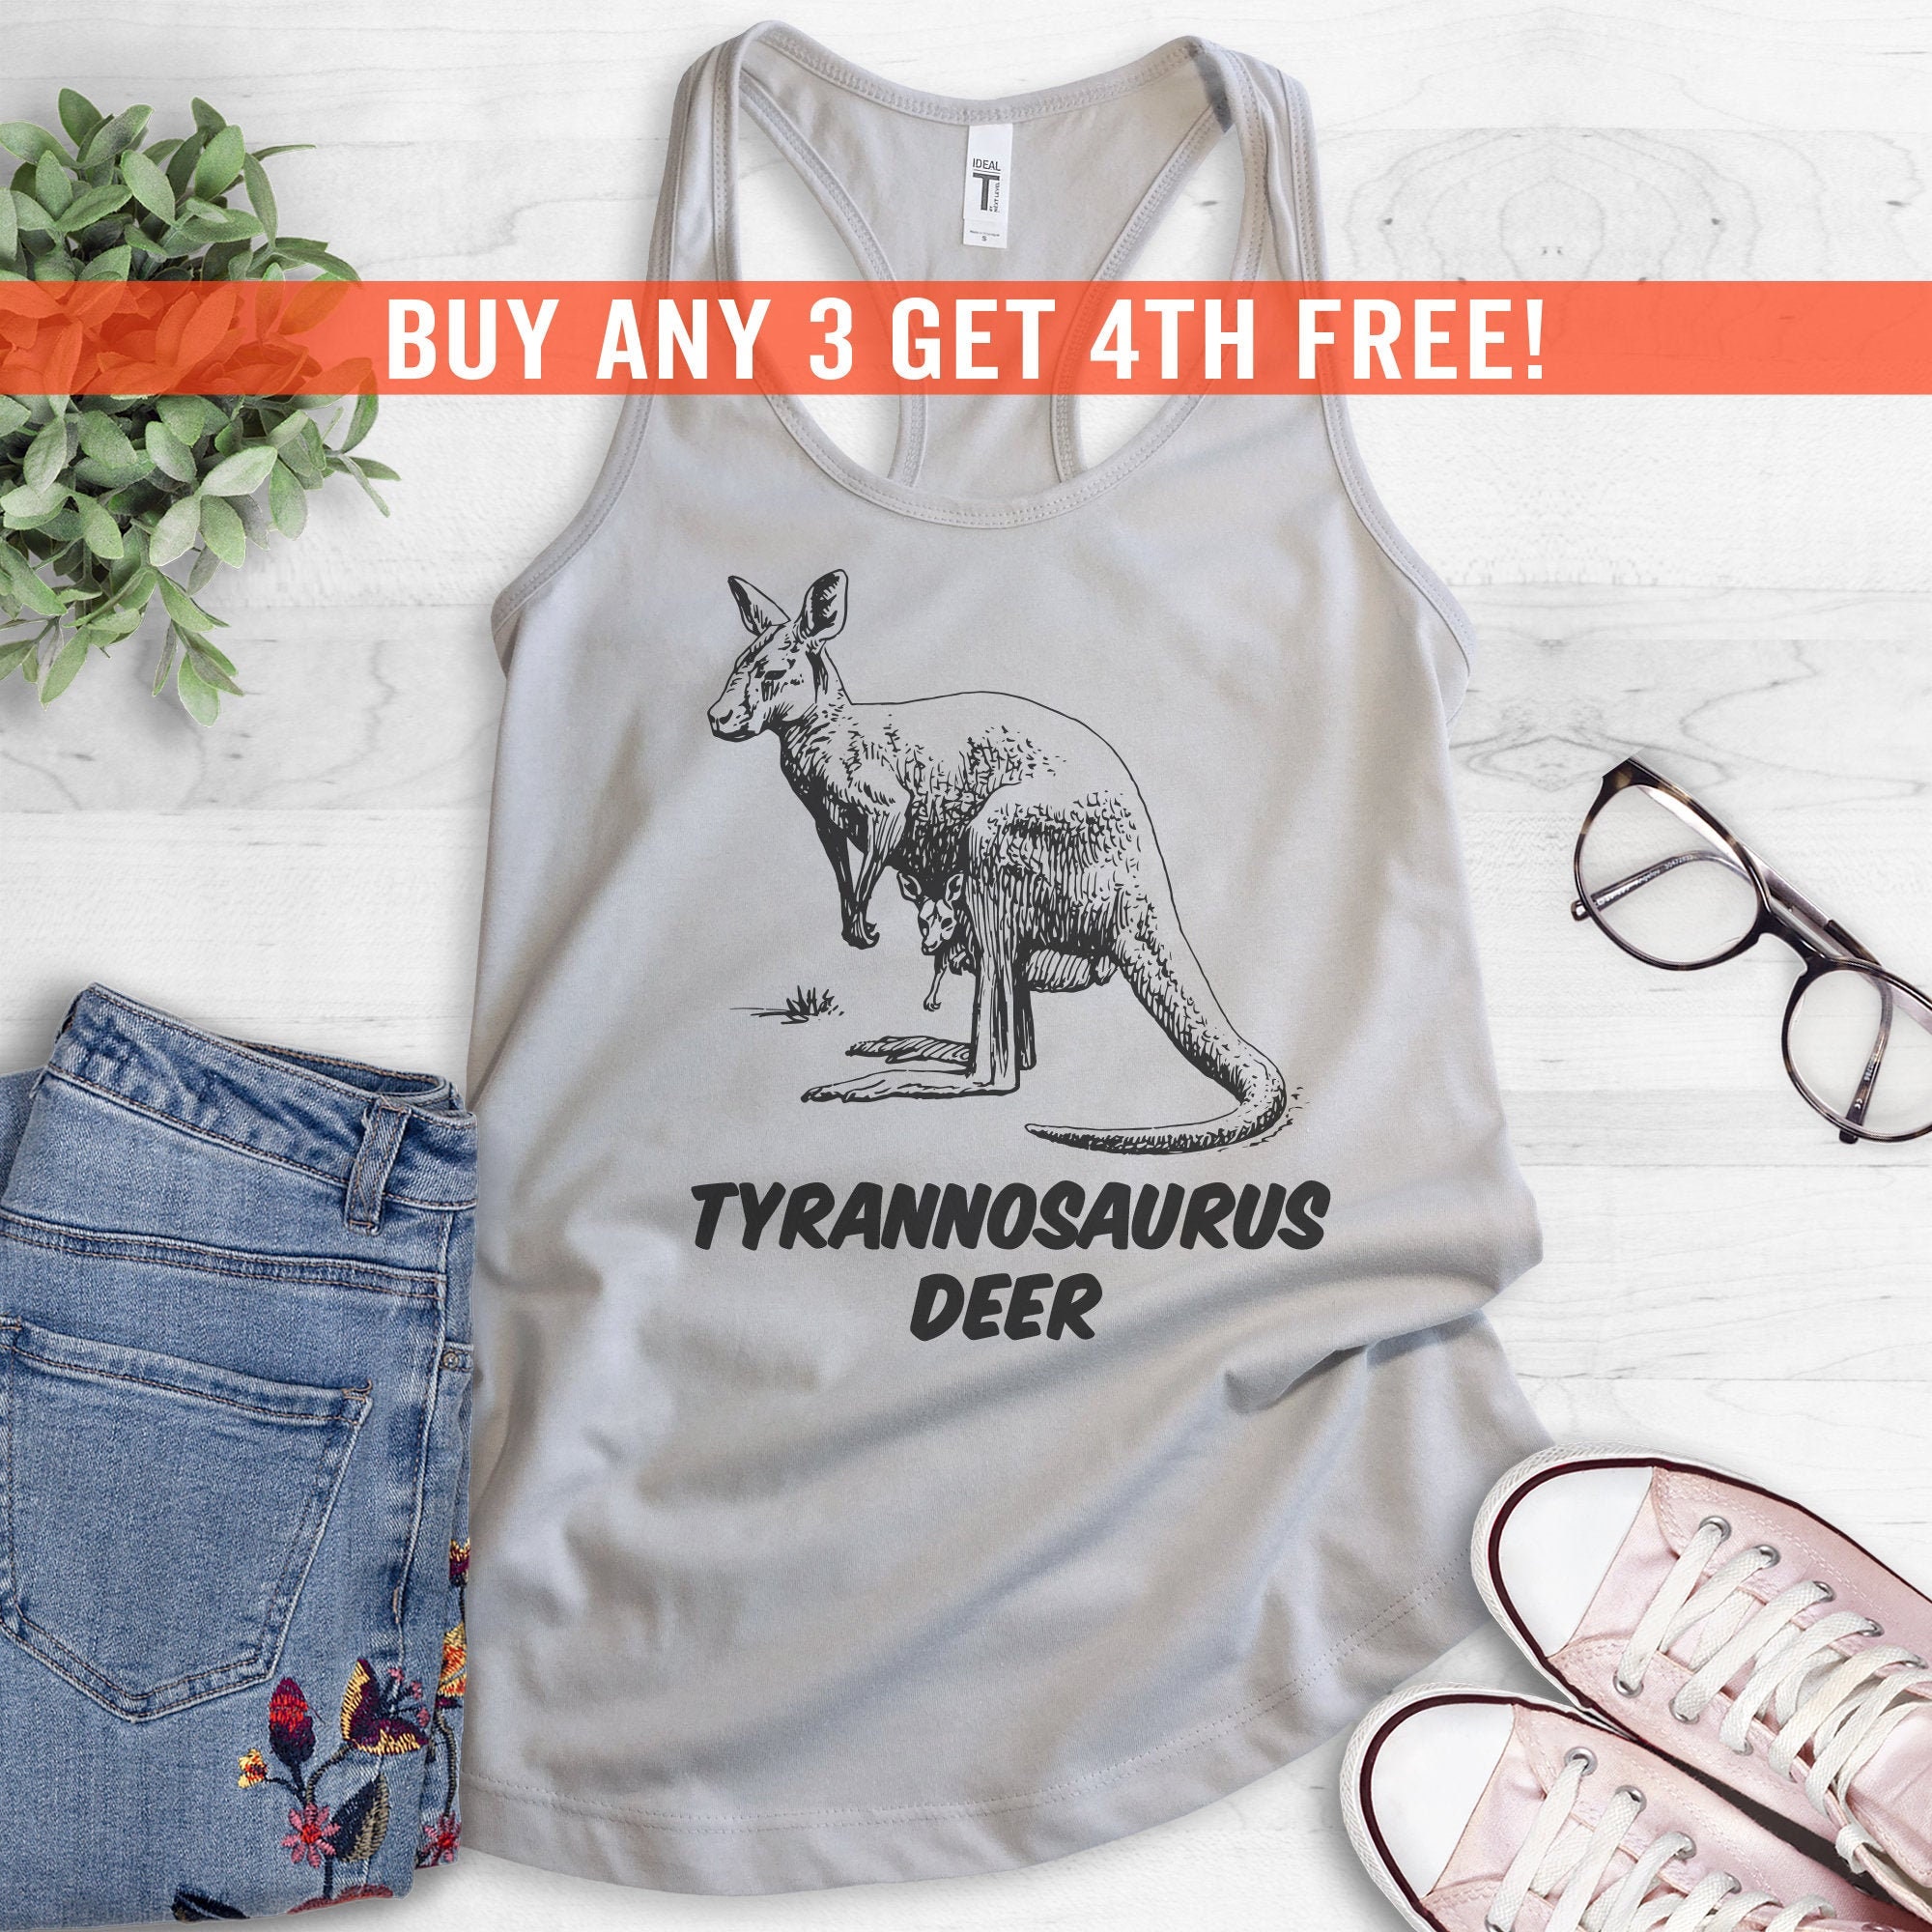 Top, Kangaroo Tank - Lover Etsy Deer Pun Shirt, Racerback, Ladies Kangaroo Animal Tank Tank Tyrannosaurus Shirt Top, Top, Cute Animal